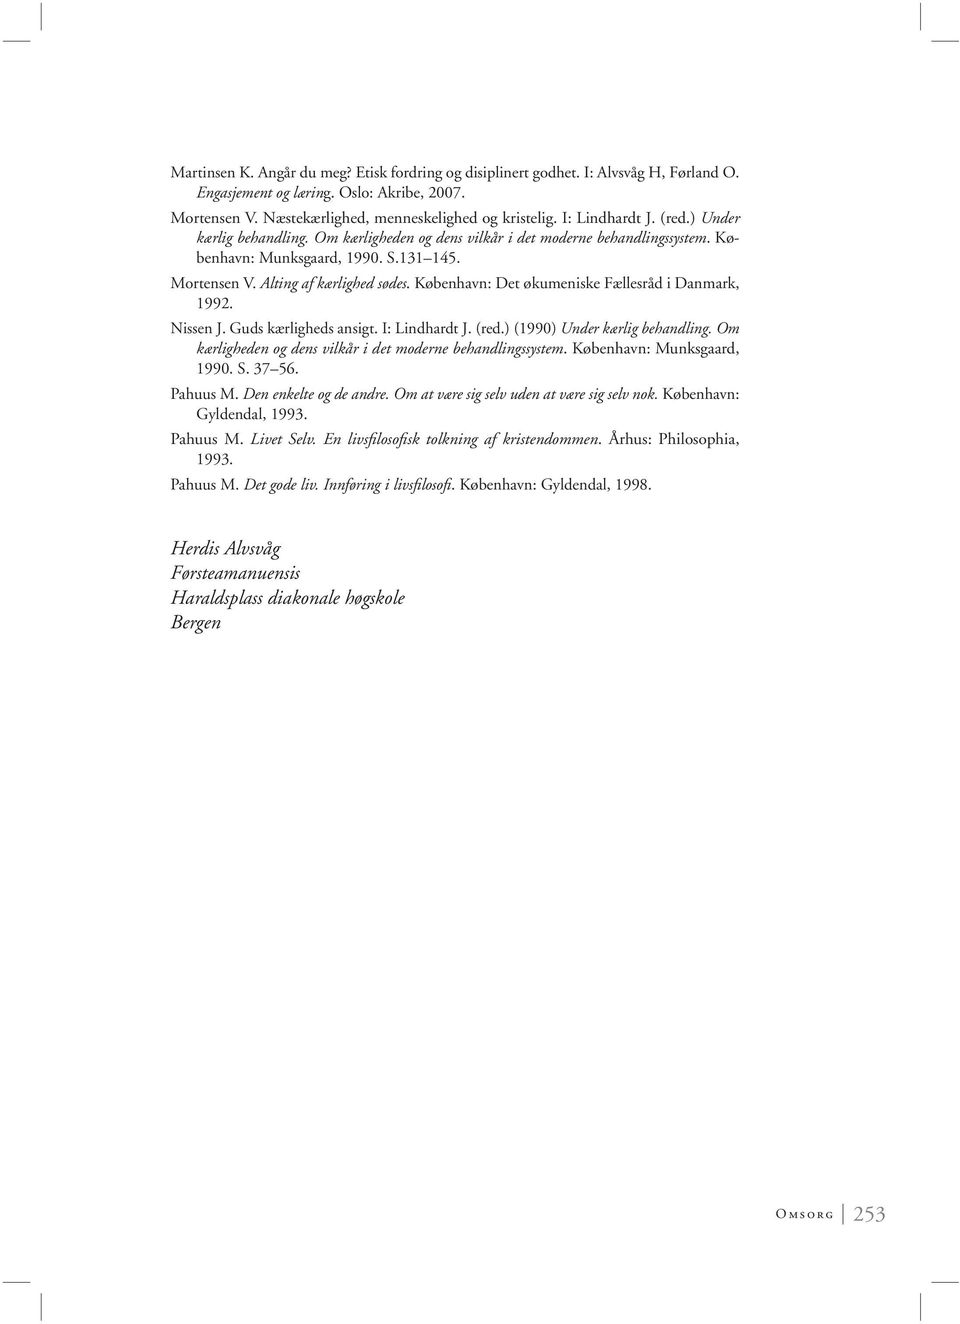 København: Det økumeniske Fællesråd i Danmark, 1992. Nissen J. Guds kærligheds ansigt. I: Lindhardt J. (red.) (1990) Under kærlig behandling.